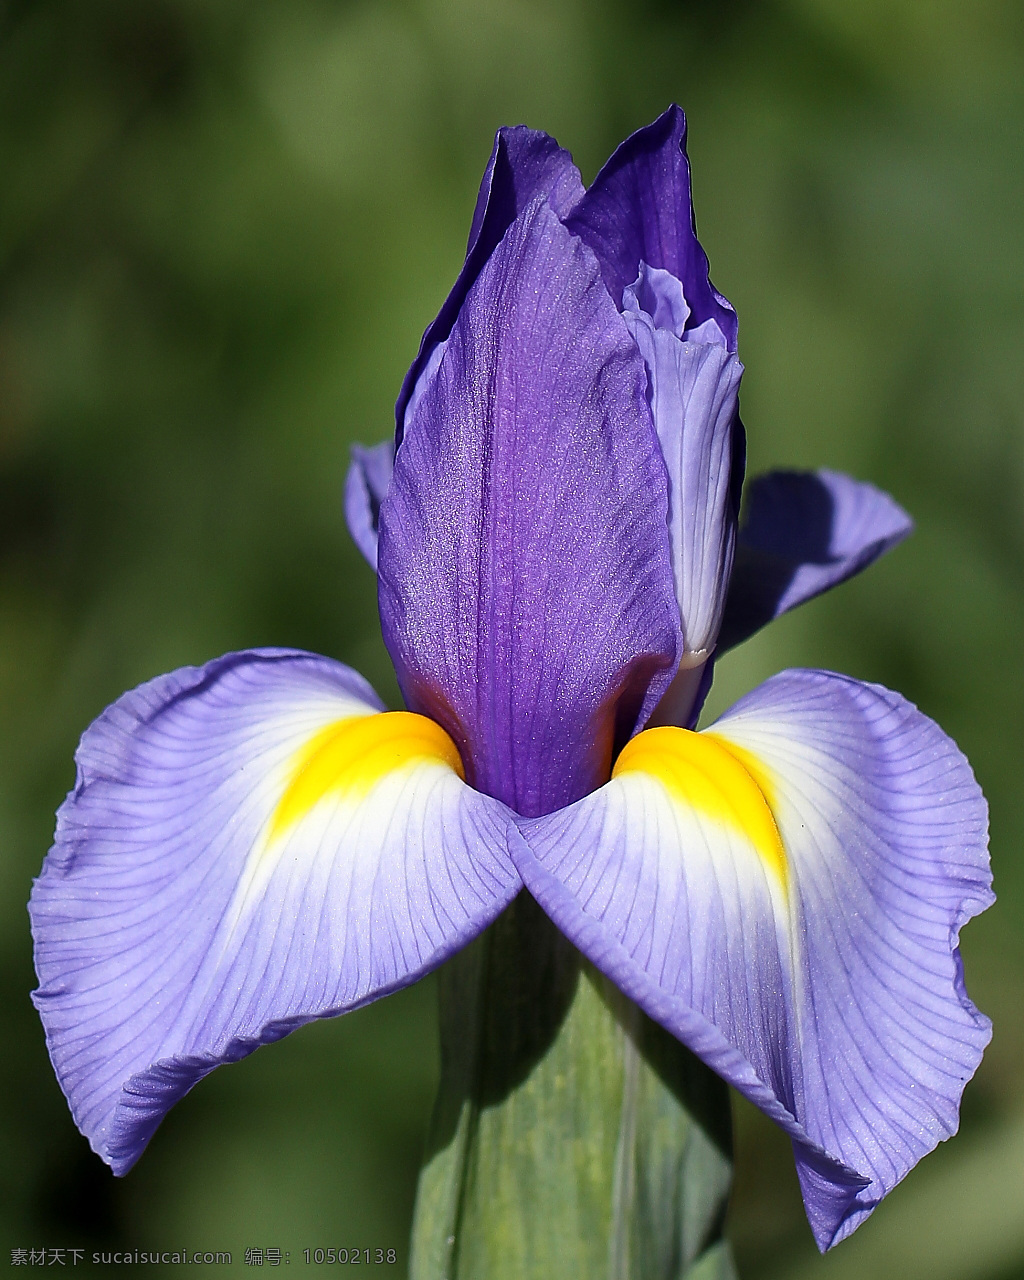 位图 植物摄影 写实花卉 花朵 鸢尾 免费素材 面料图库 服装图案 黑色